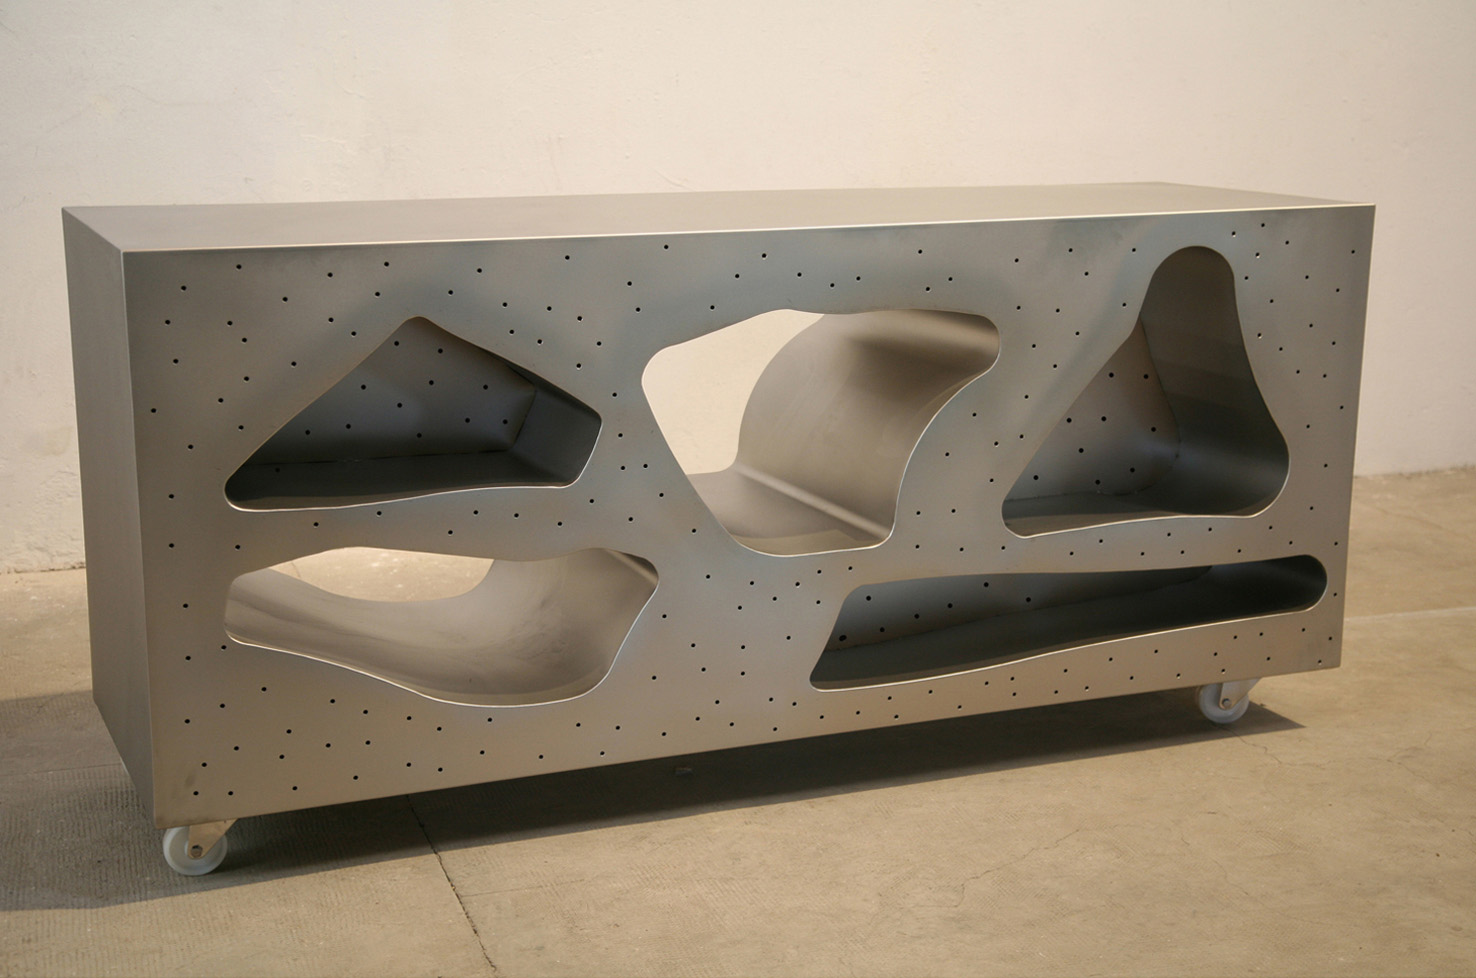 Mueble 1, 2014, acero inoxidable satinado, 85,5 x 180,5 x 55 cm.